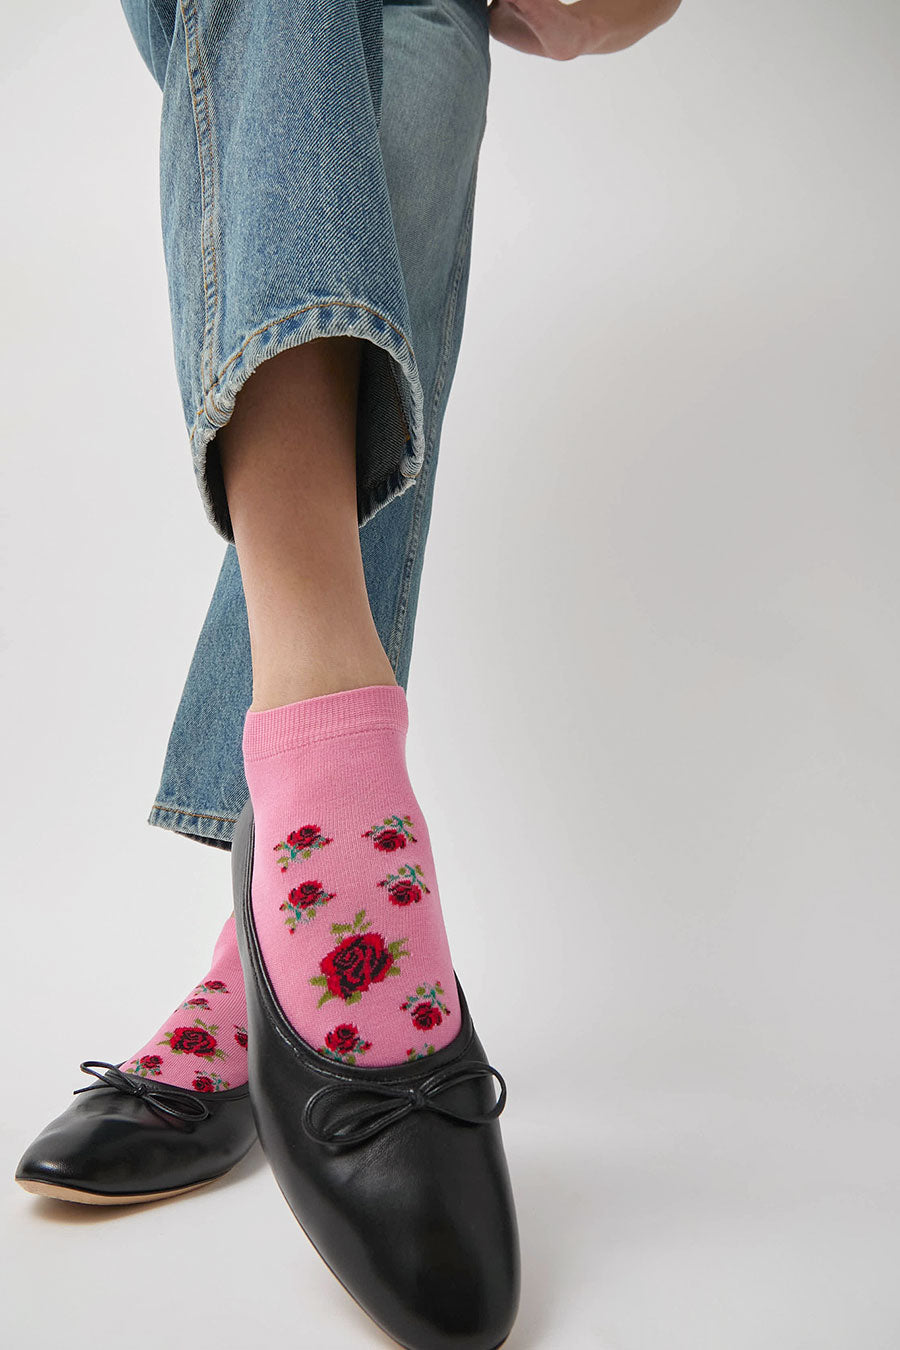 Maria La Rosa Rose Sneaker Socks in Pink and Red Rose